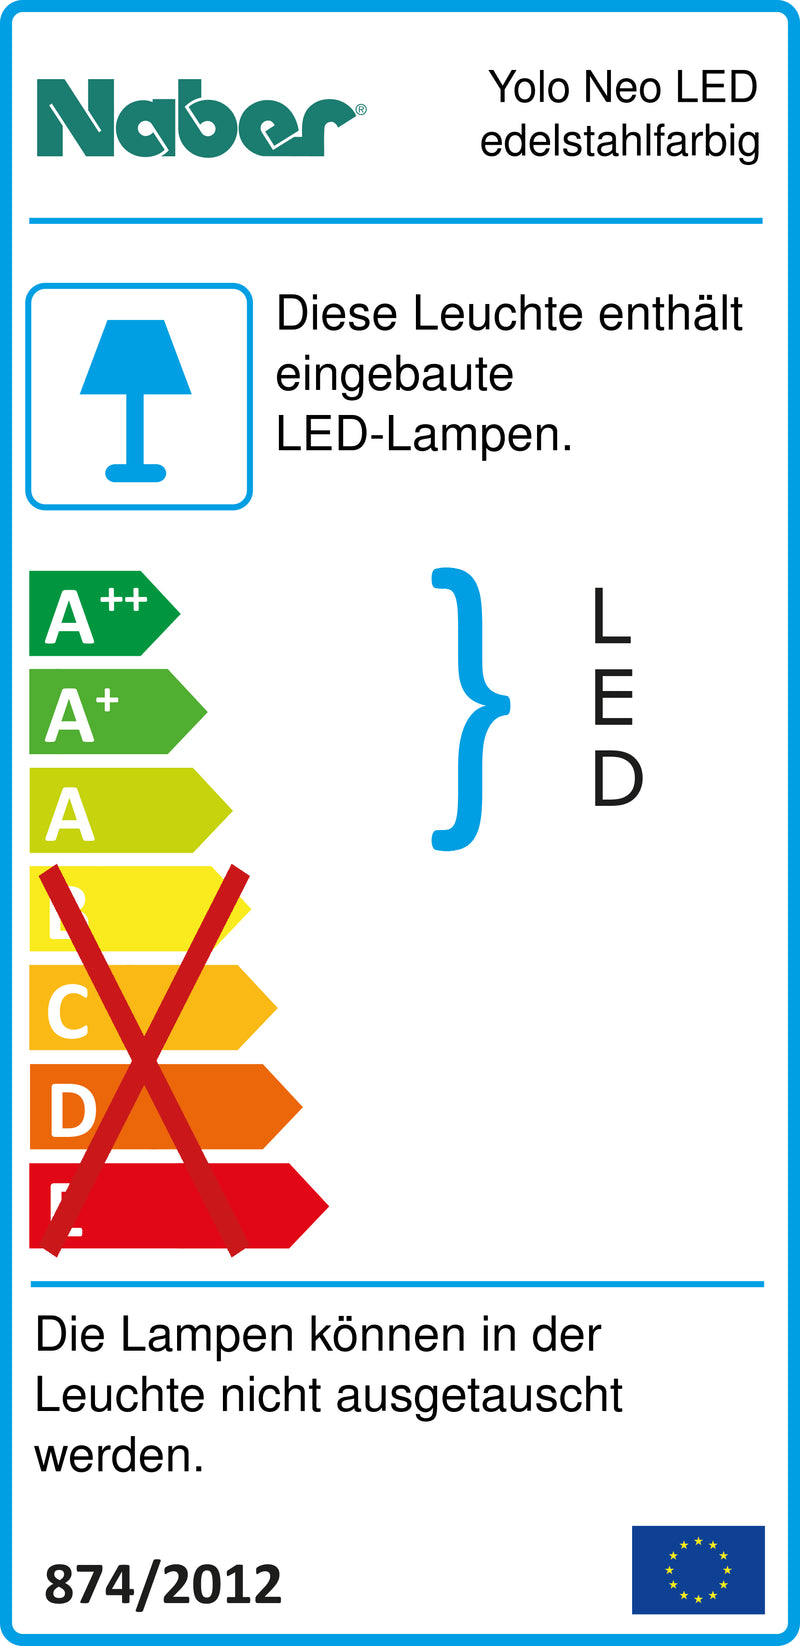 E-Label zu Zeichnung zu Yolo Neo LED edelstahlfarbig als Variante Einzelleuchte m. S., 4000 K neutralweiß von Naber GmbH in der Kategorie Lichttechnik in Österreich auf conceptshop.at